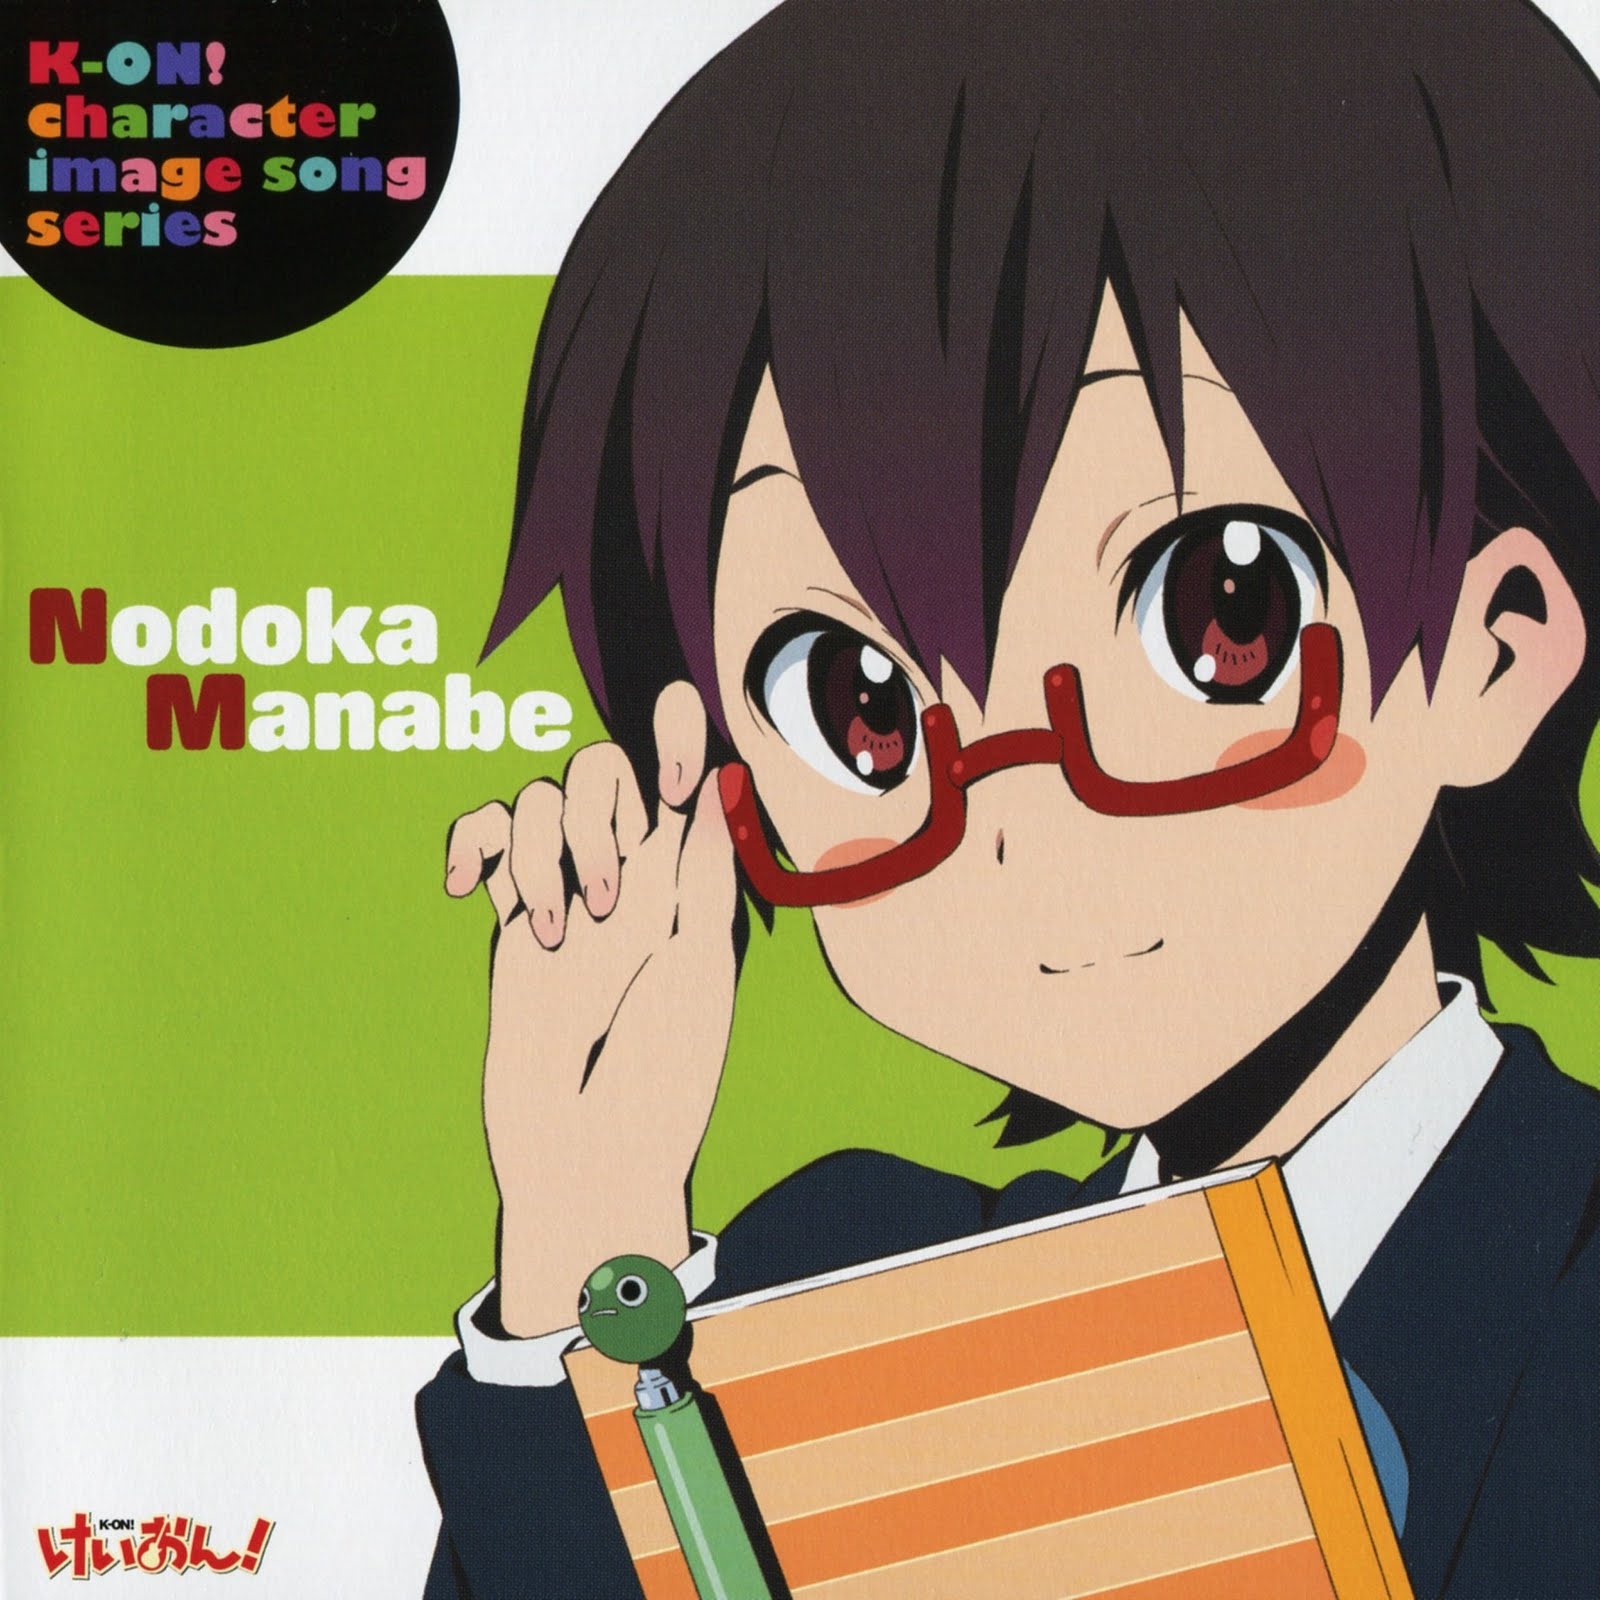 Character Image Song Series - Nanabe Nodoka